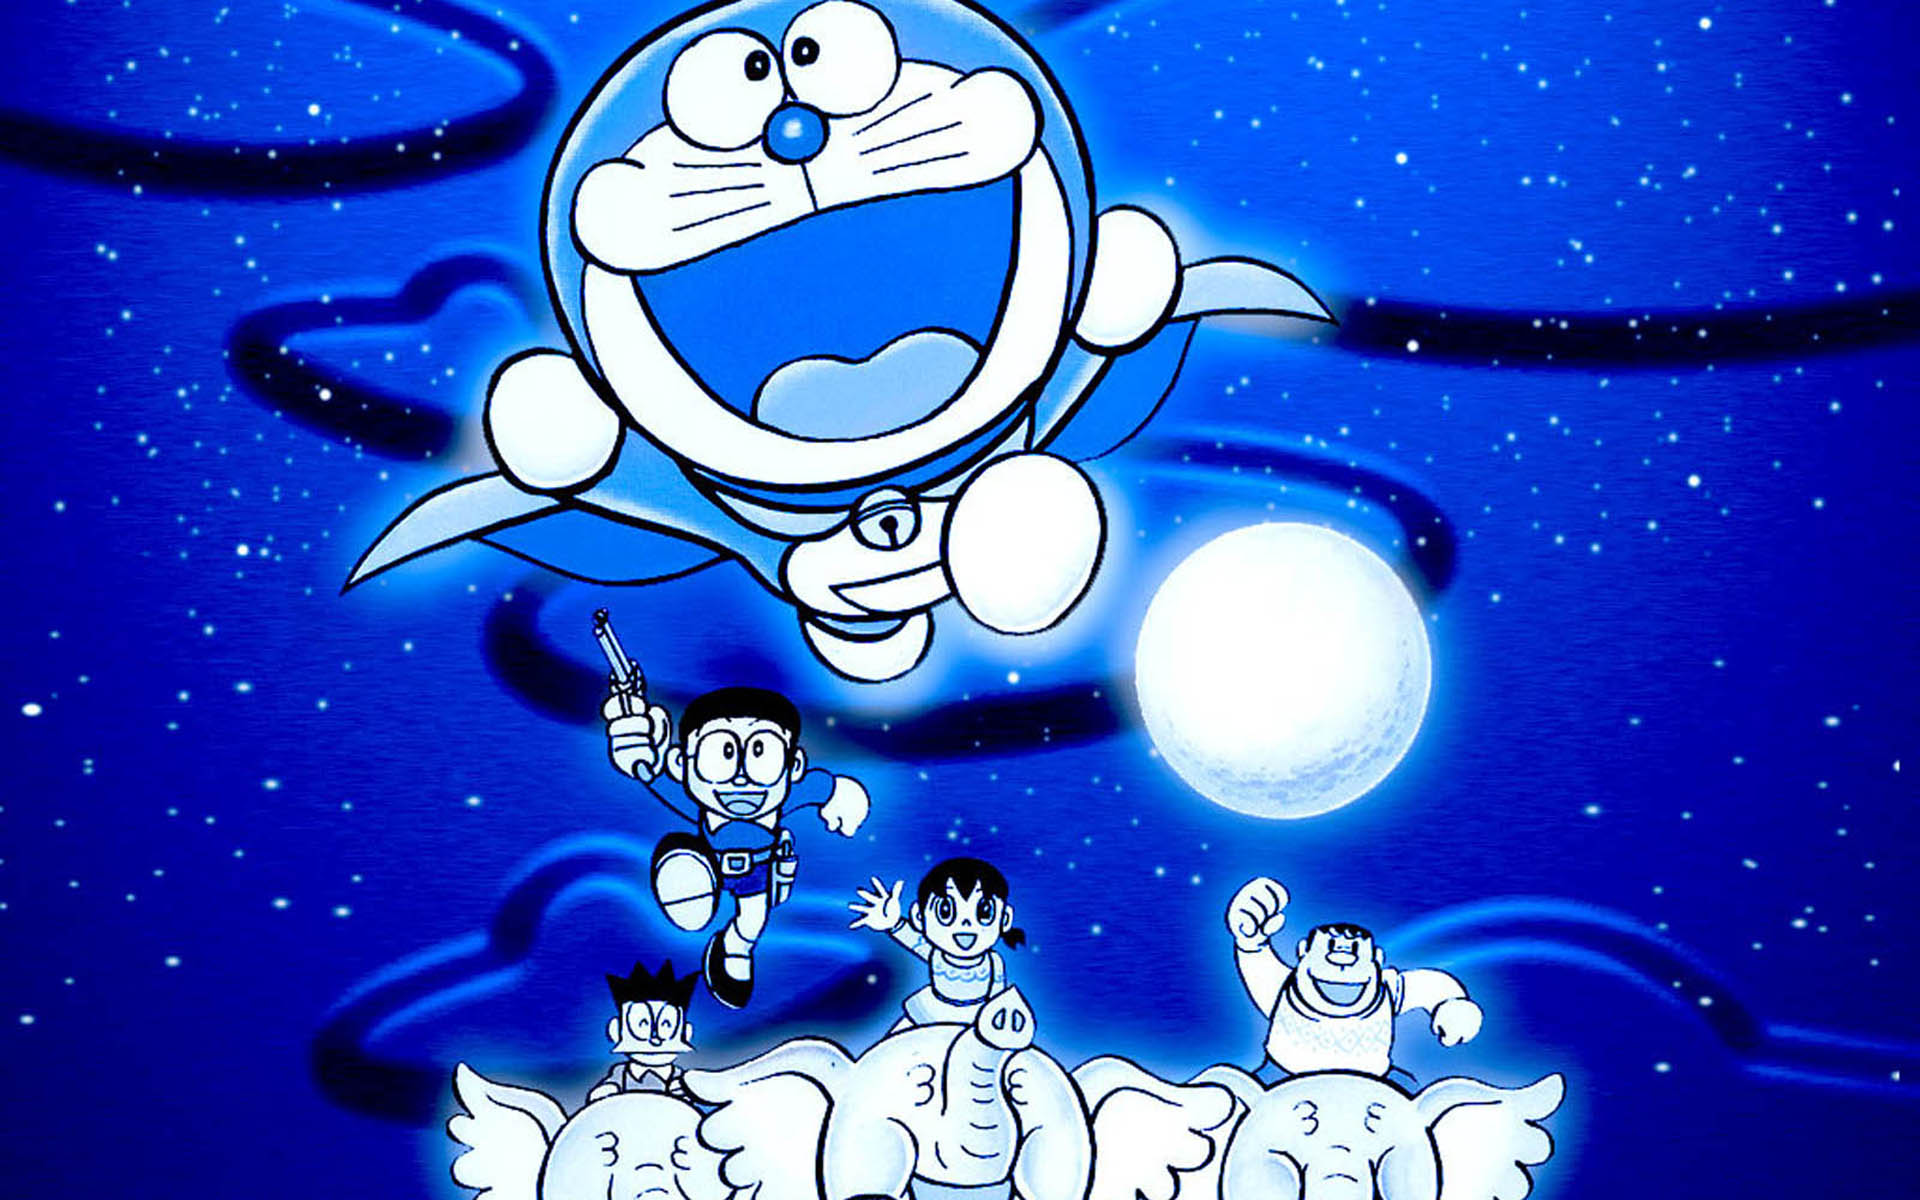 Bạn đang tìm kiếm những hình nền cao cấp nhất cho thiết bị của mình? Đây chắc chắn sẽ là lựa chọn hoàn hảo cho bạn. Hình ảnh Doraemon được chọn lọc và thiết kế với chất lượng cực kỳ tốt, đảm bảo tôn lên sự yêu thích của bạn với nhân vật này. Cùng chiêm ngưỡng và tải về những hình nền cao cấp nhất và tận hưởng trọn vẹn tính năng của thiết bị của mình.